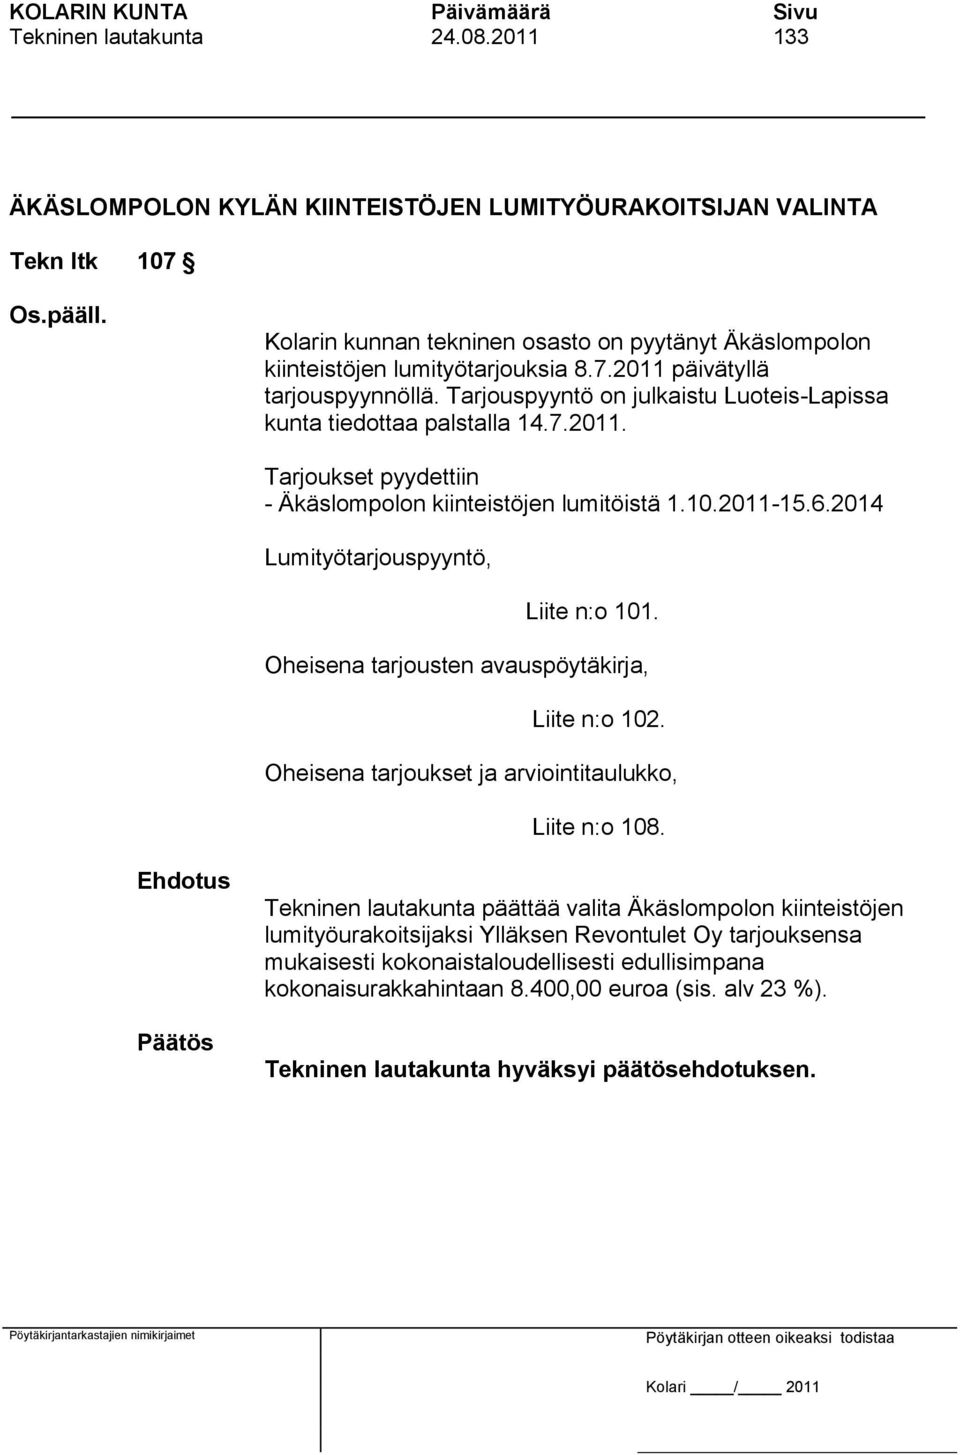 Tarjouspyyntö on julkaistu Luoteis-Lapissa kunta tiedottaa palstalla 14.7.2011. Tarjoukset pyydettiin - Äkäslompolon kiinteistöjen lumitöistä 1.10.2011-15.6.